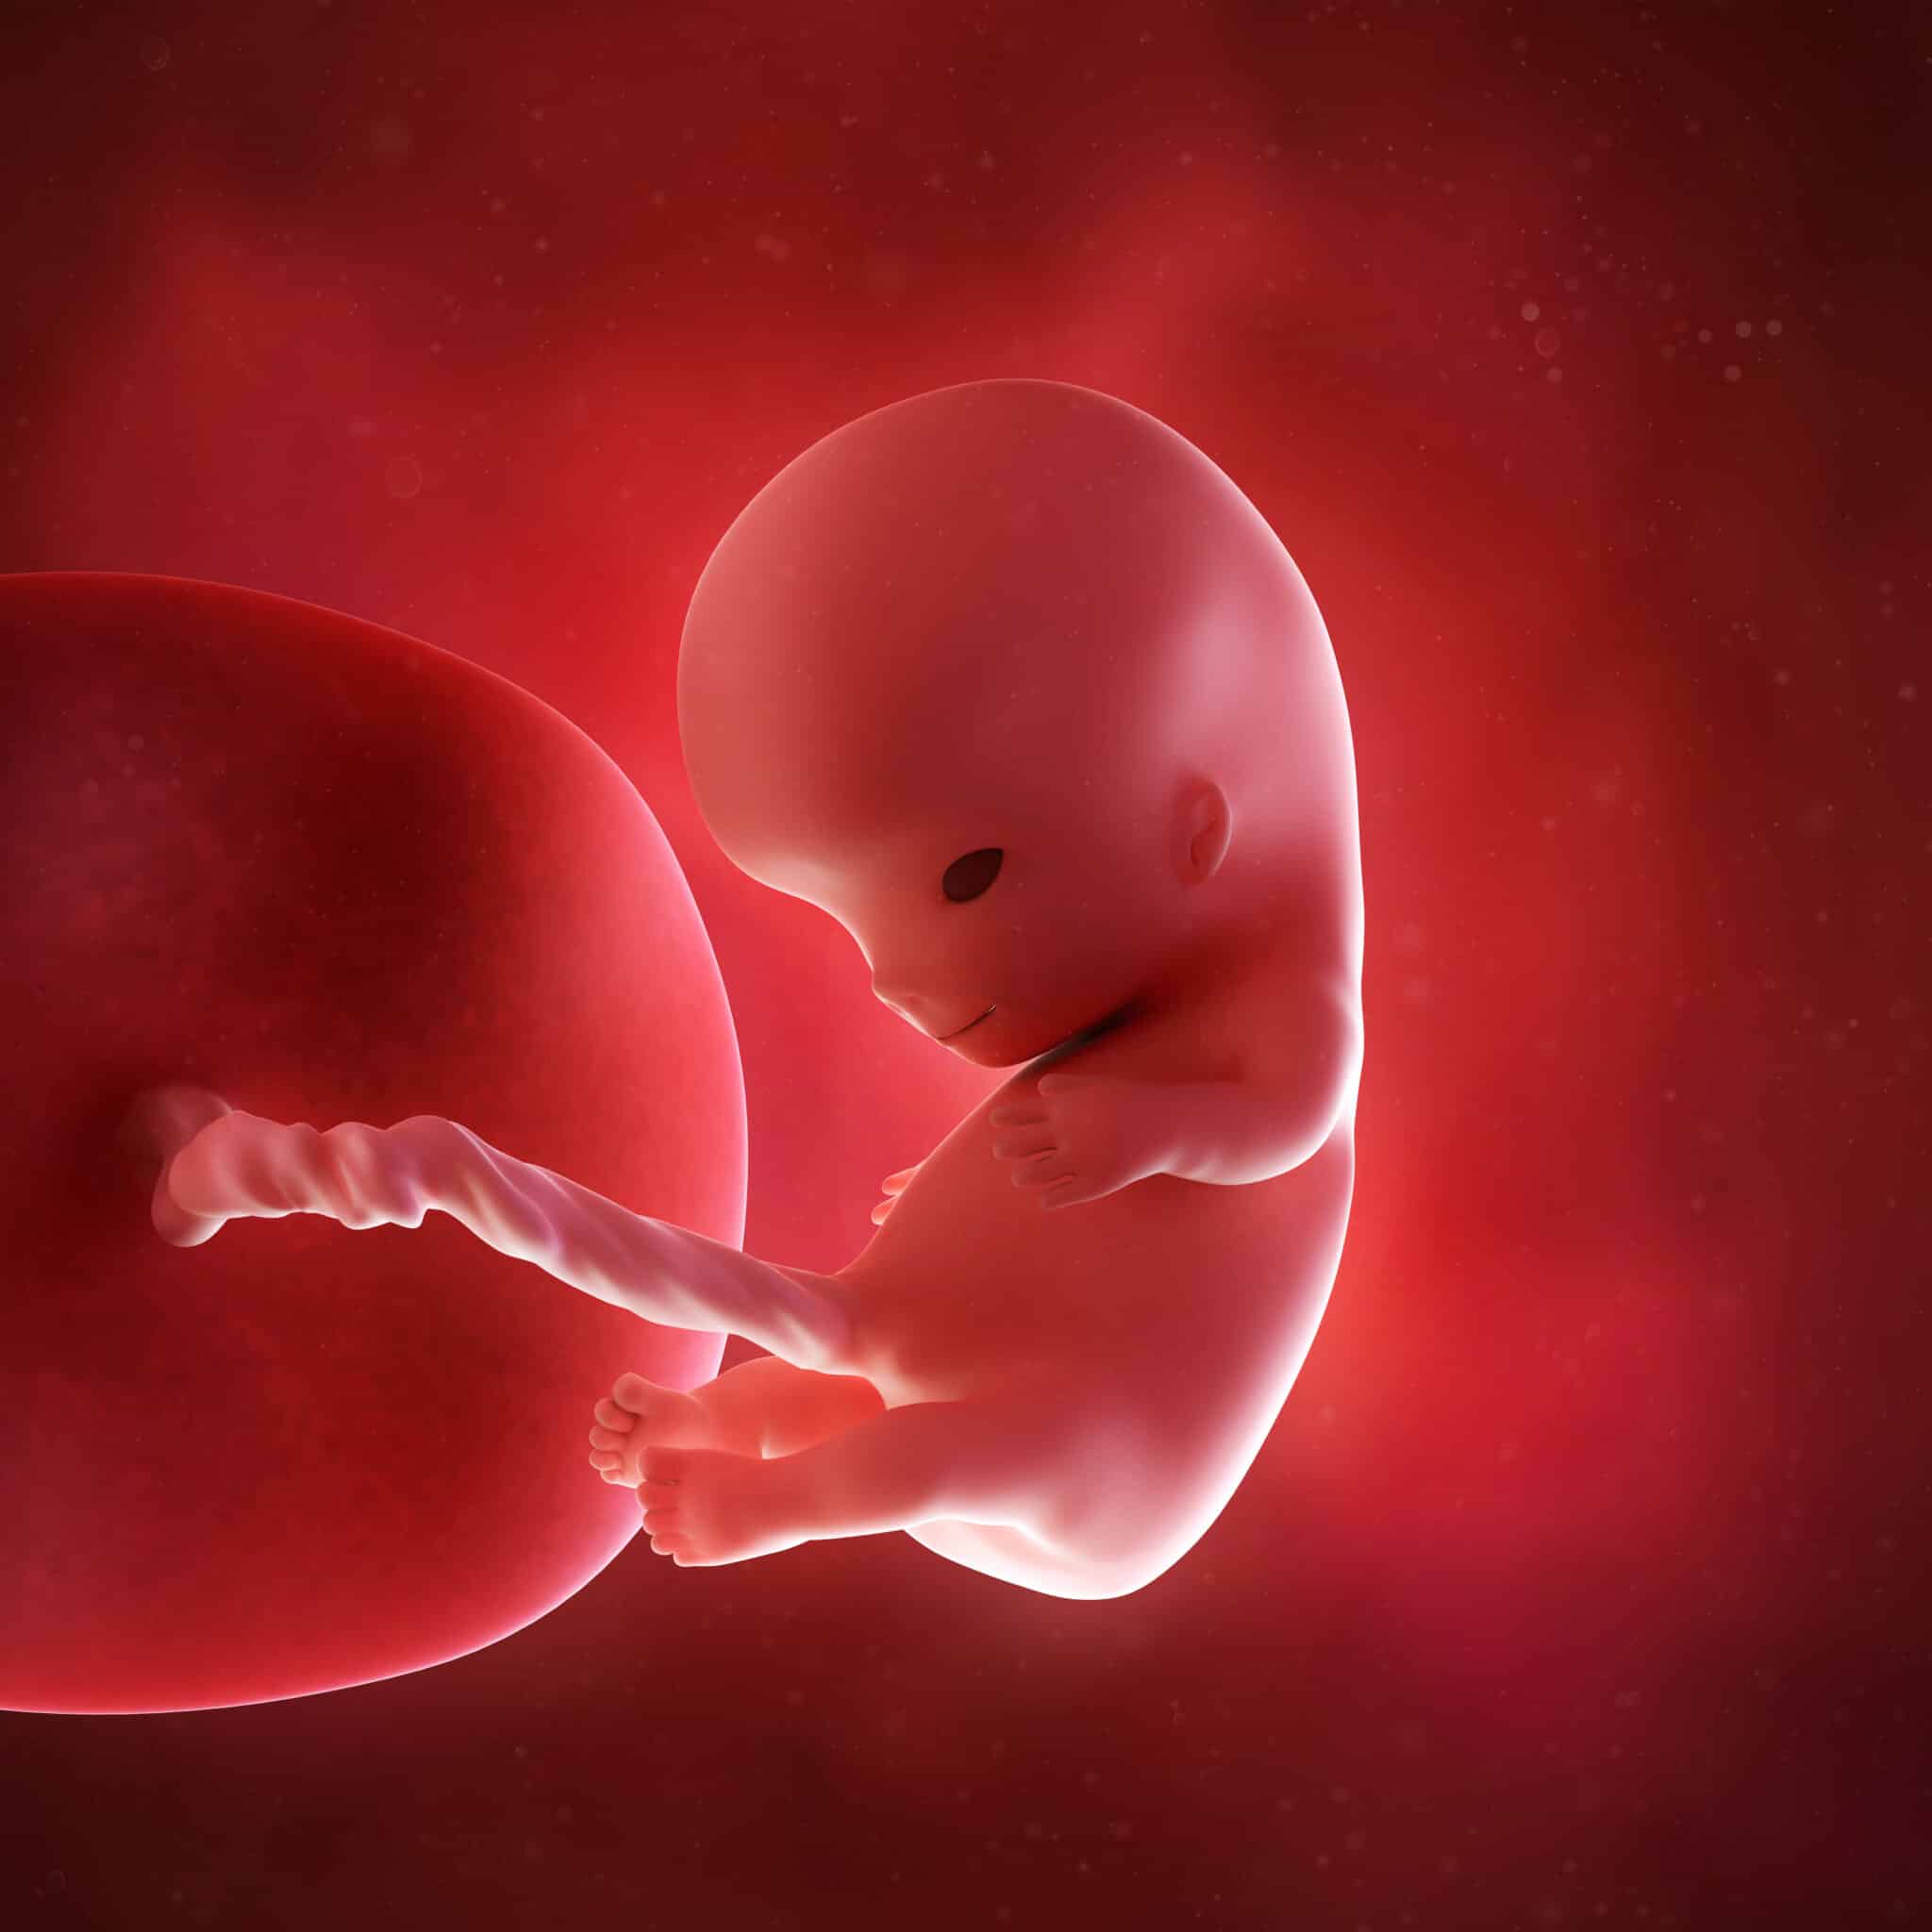 Конец 9 недели. Эмбрион на 10 неделе беременности. 10 Недель беременности фото плода. Плод 9-10 акушерских недель беременности. Зародыш человека 9-10 недель.